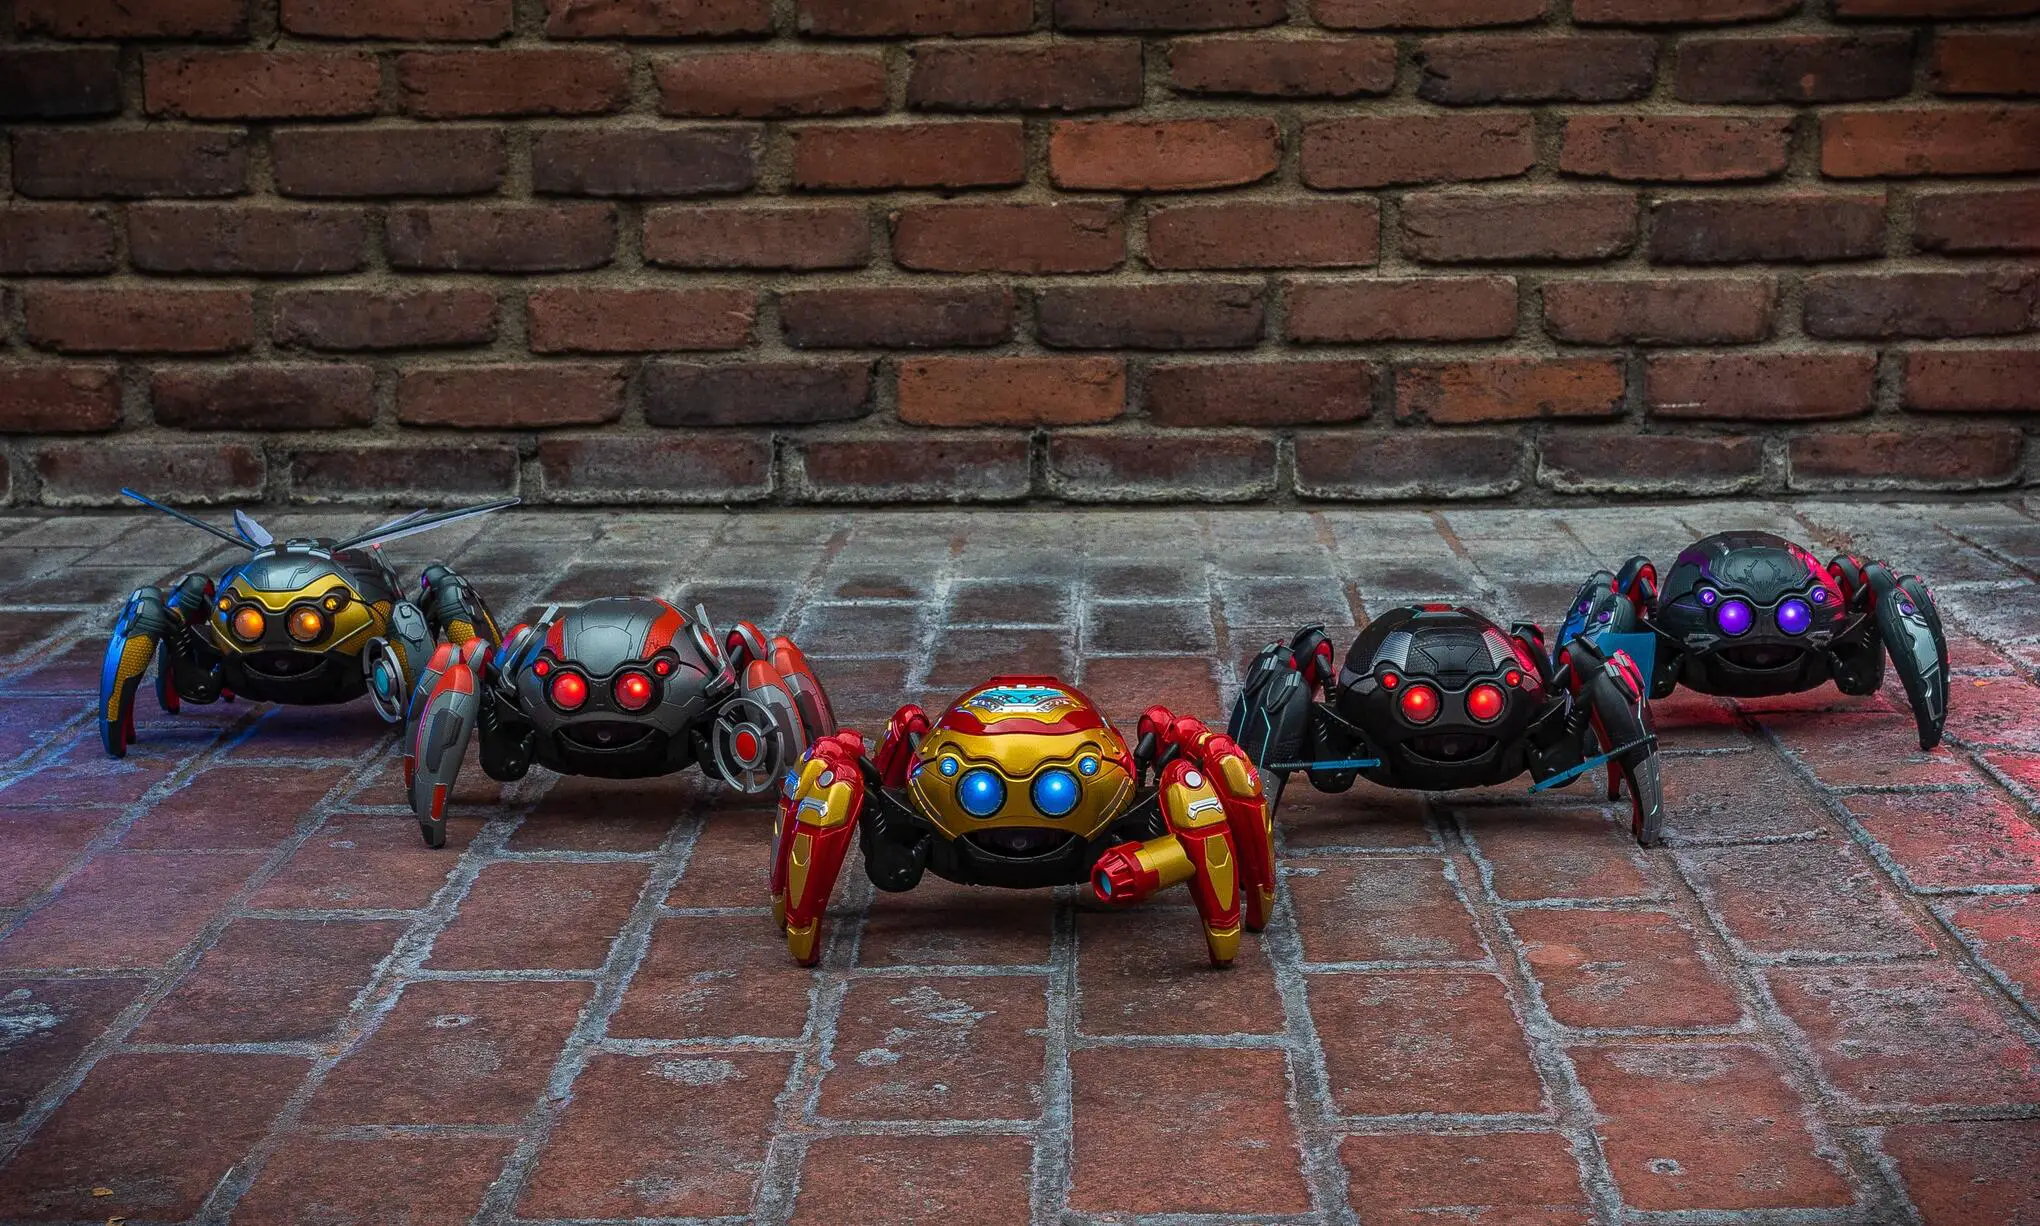 Spider-Bots